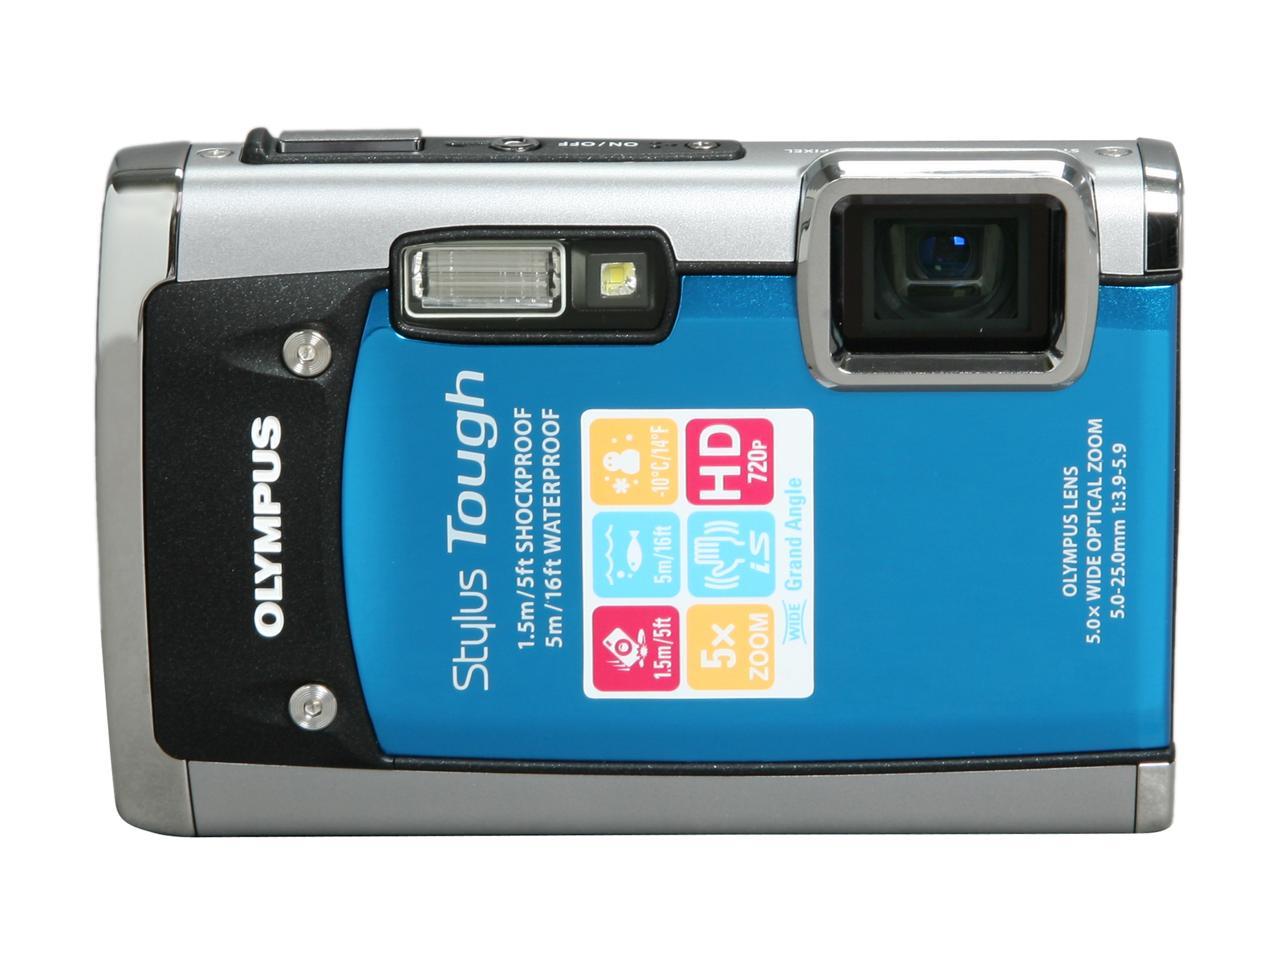 Slim Trunk bibliotheek weten OLYMPUS Stylus Tough 6020 Blue 14 MP Waterproof Shockproof 28mm Wide Angle  Digital Camera - Newegg.com